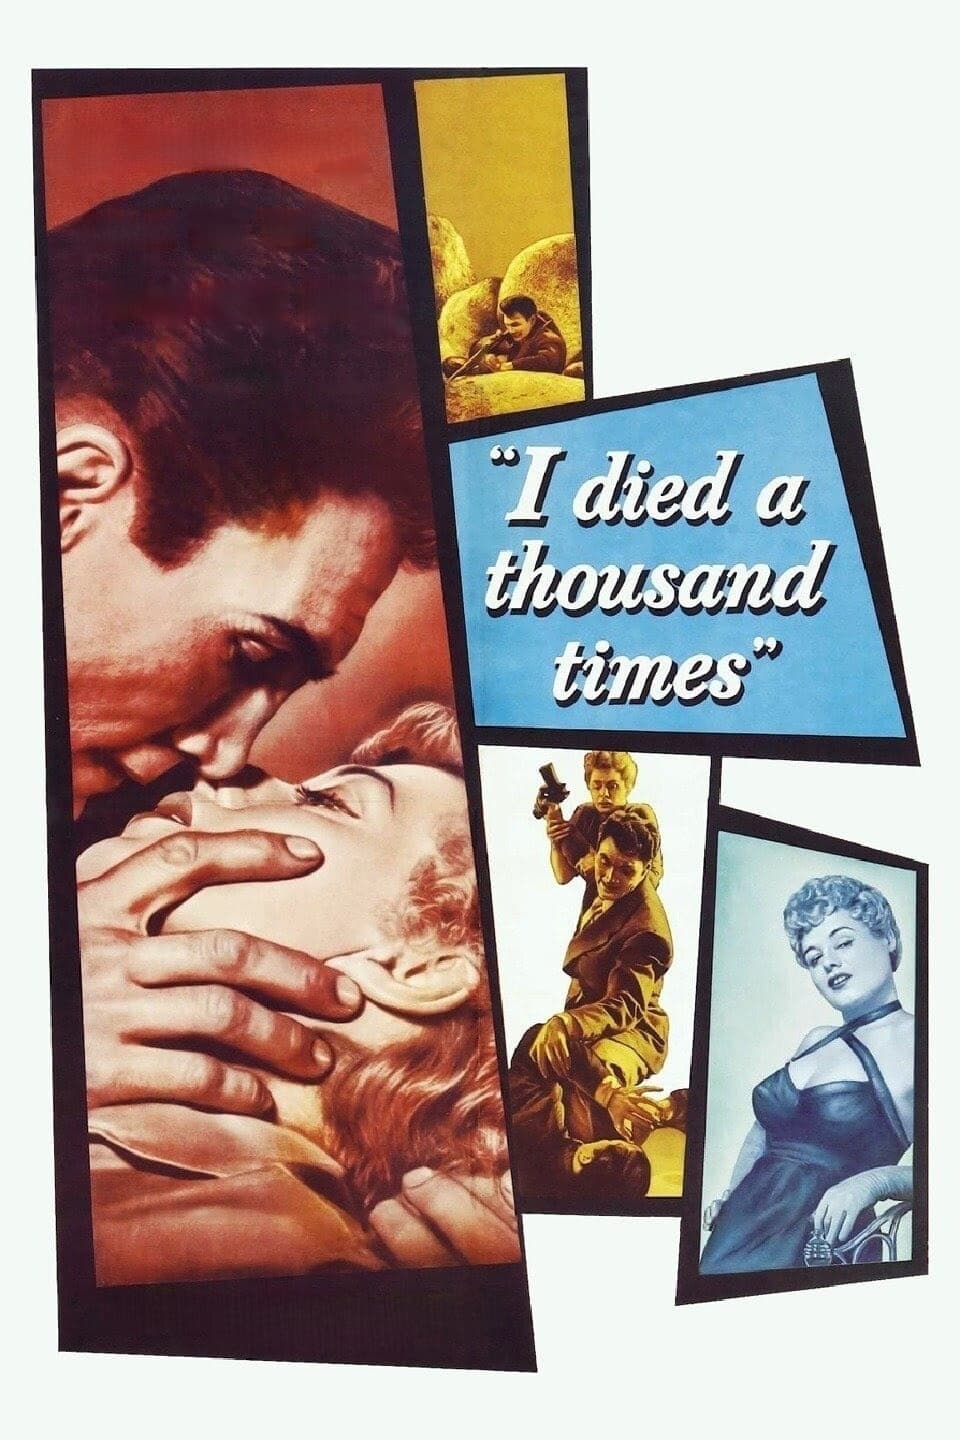 He muerto miles de veces (1955)